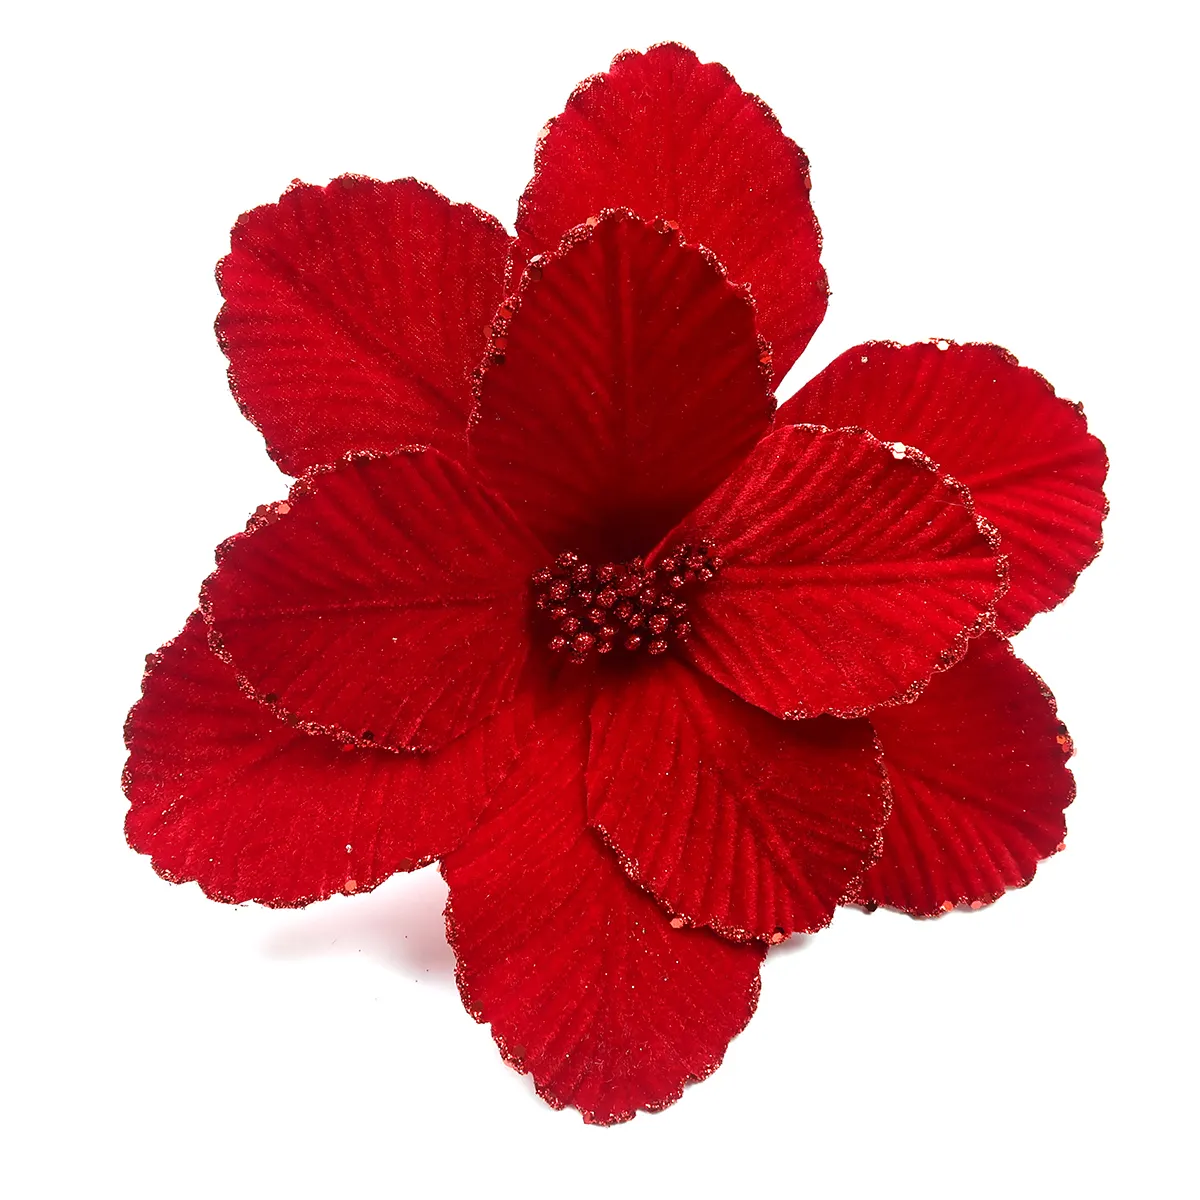 Forniture per decorazioni natalizie poinsettia di natale artificiale flores de navidad fiori di natale rossi